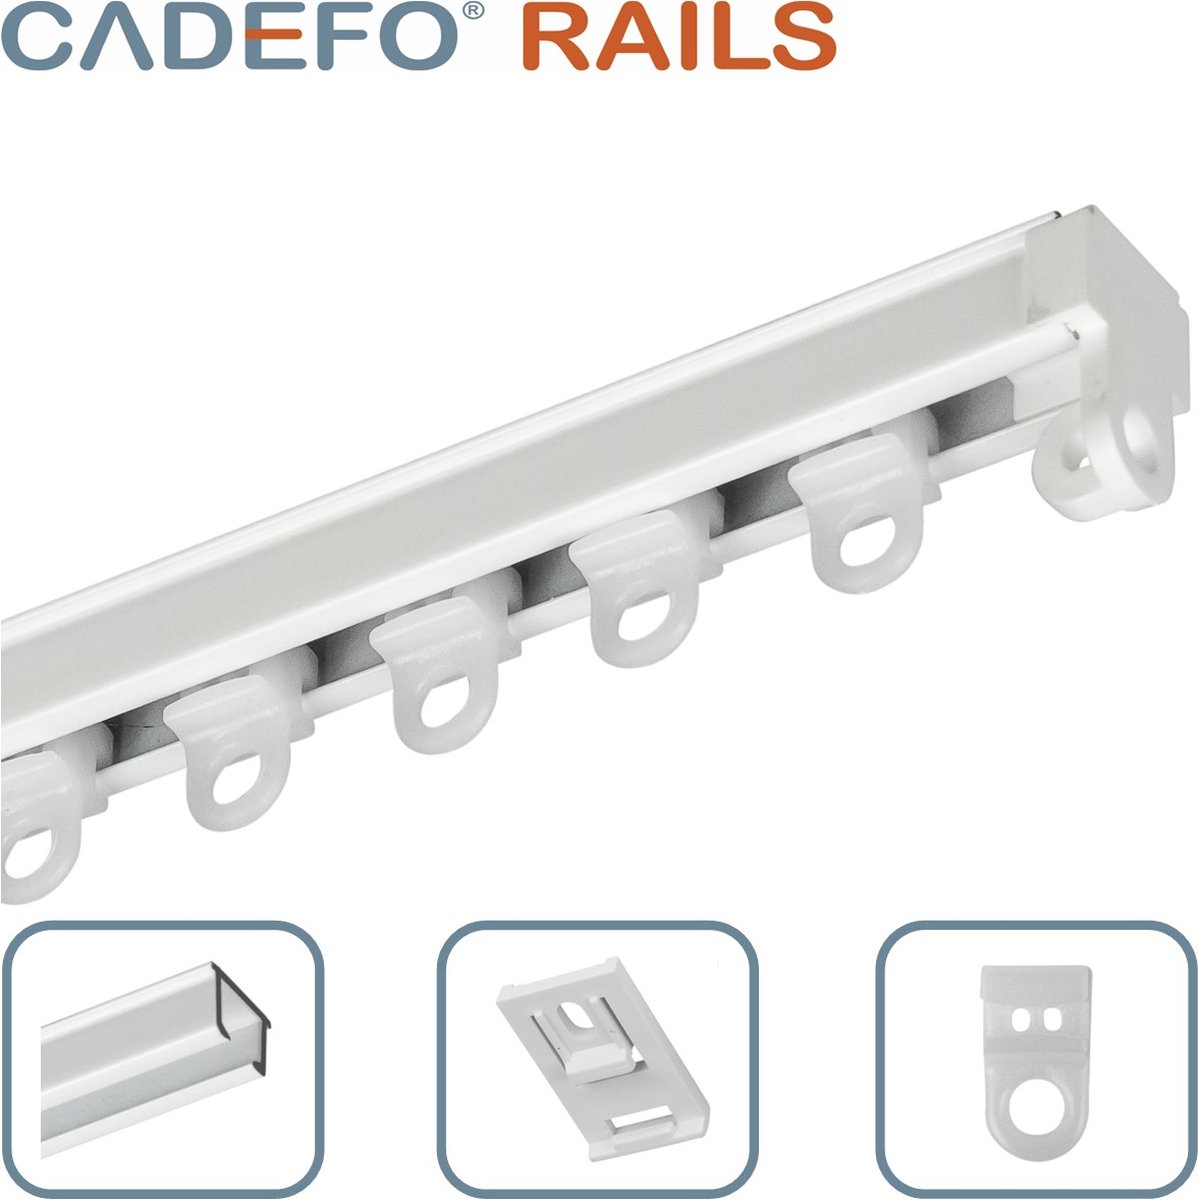 CADEFO RAILS (451 - 500 cm) Gordijnrails - Compleet op maat! - UIT 1 STUK - Leverbaar tot 6 meter - Plafondbevestiging - Lengte 486 cm